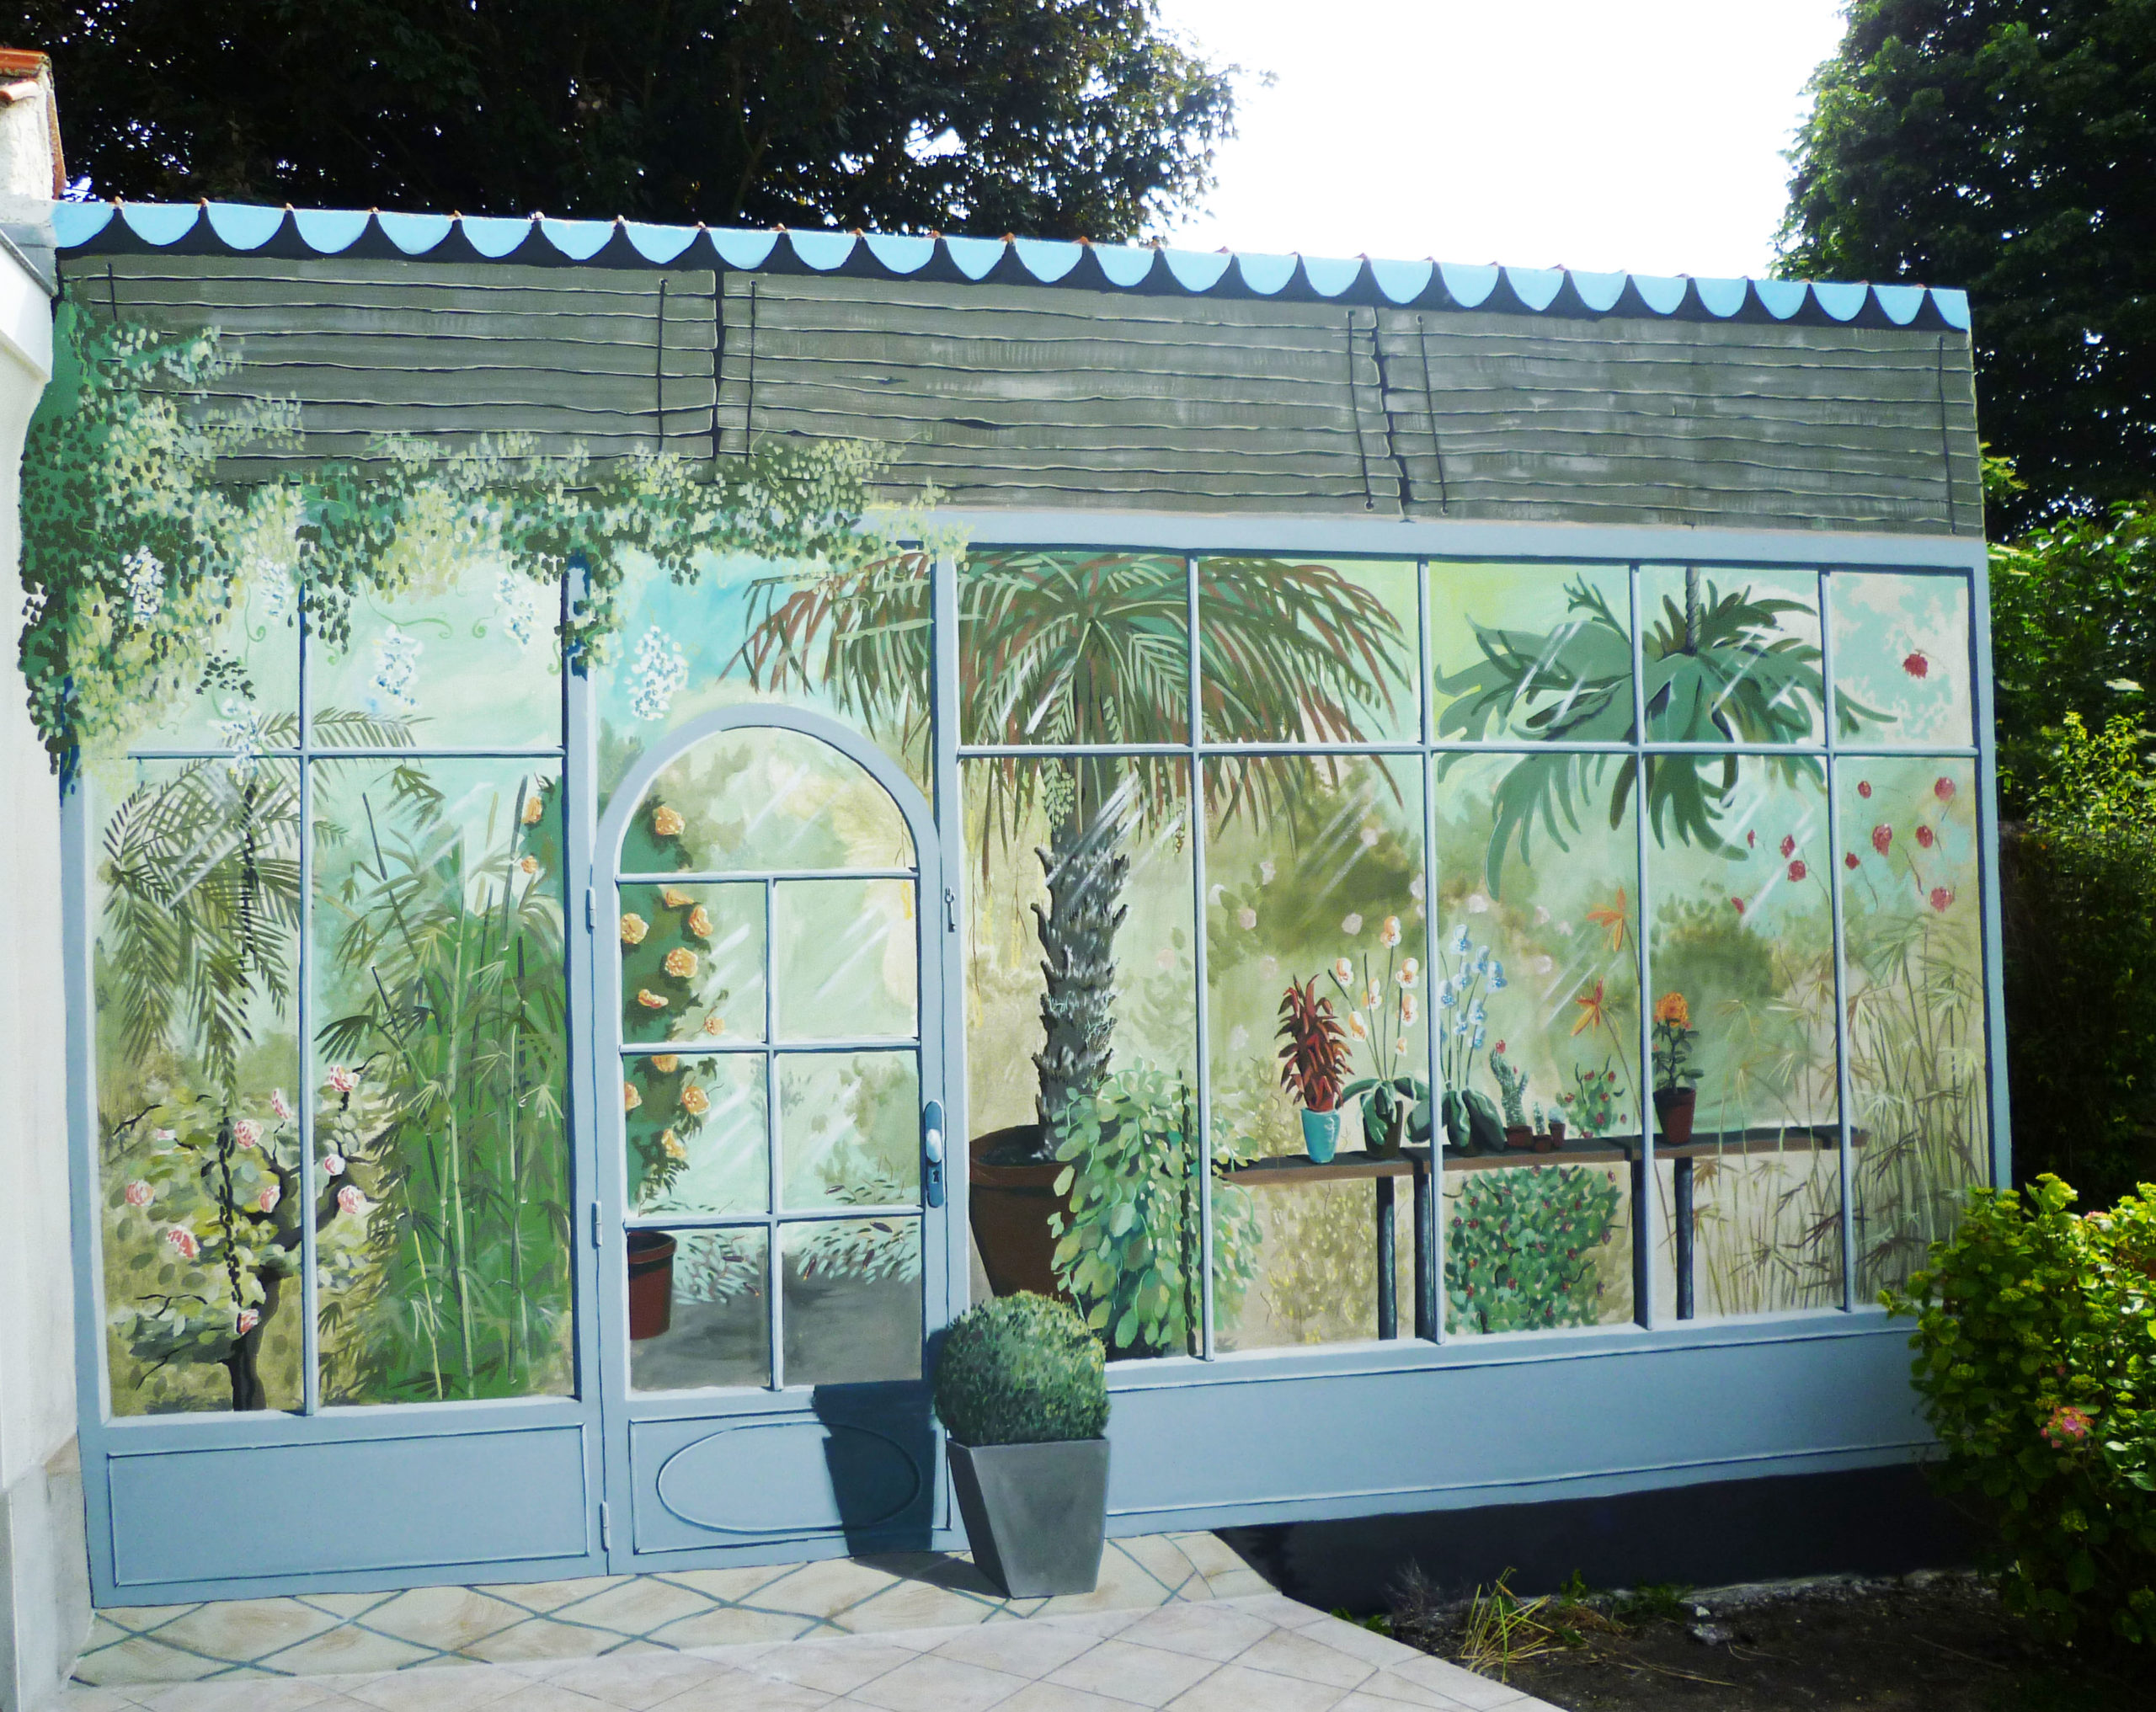 Décor peint de jardin d’hiver sur une terrasse